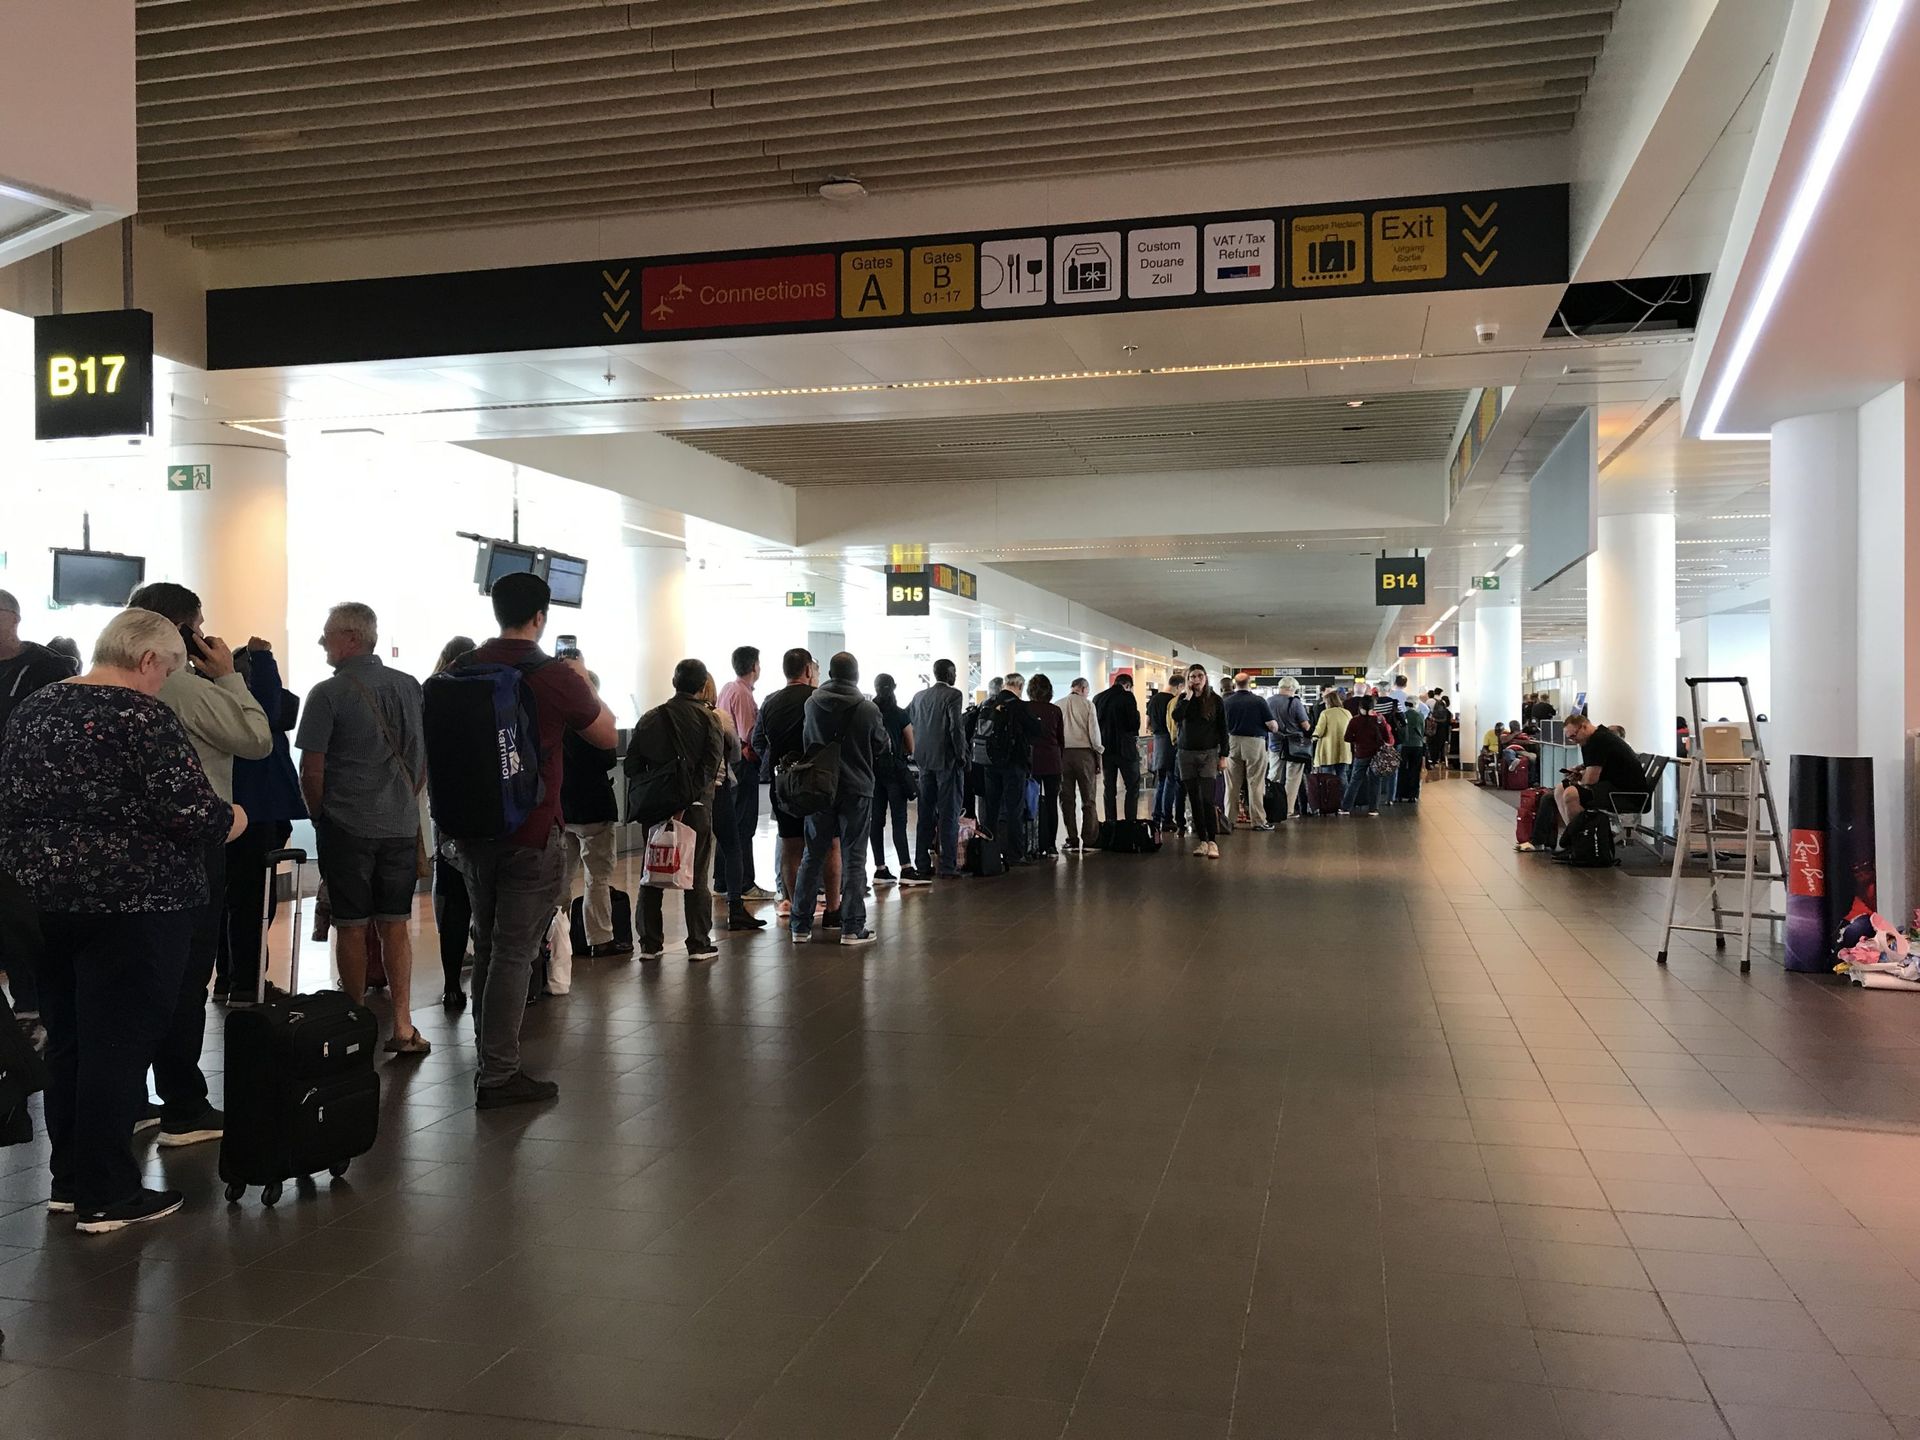 Longue file devant le comptoir Brussels Airlines dans la partie salles d’embarquement de l’aéroport.